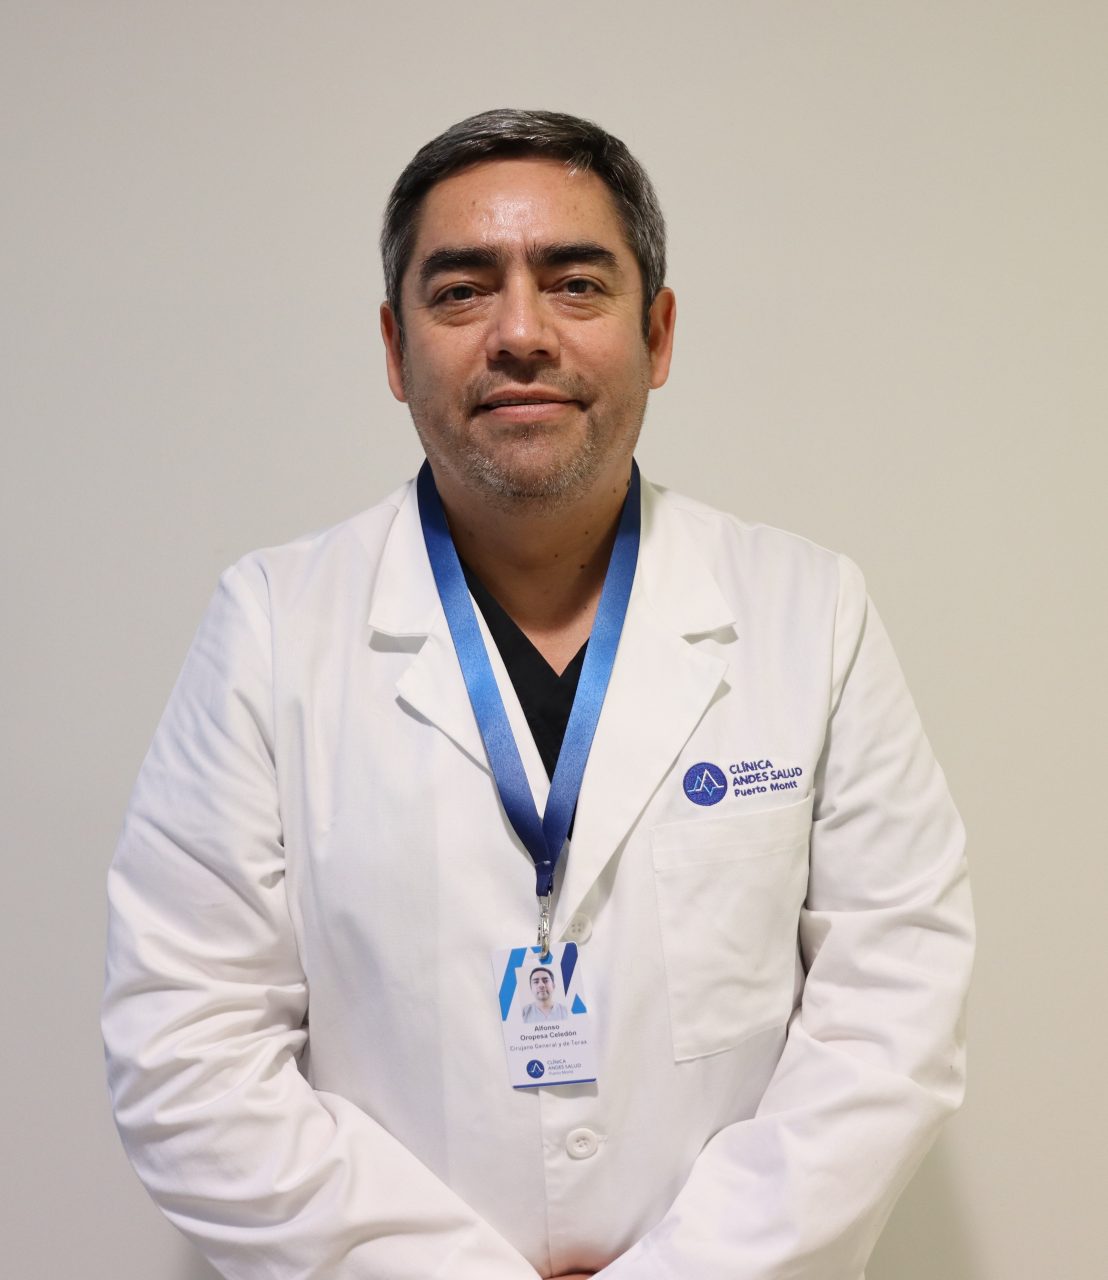 Dr. Alfonso Oropesa Celedón